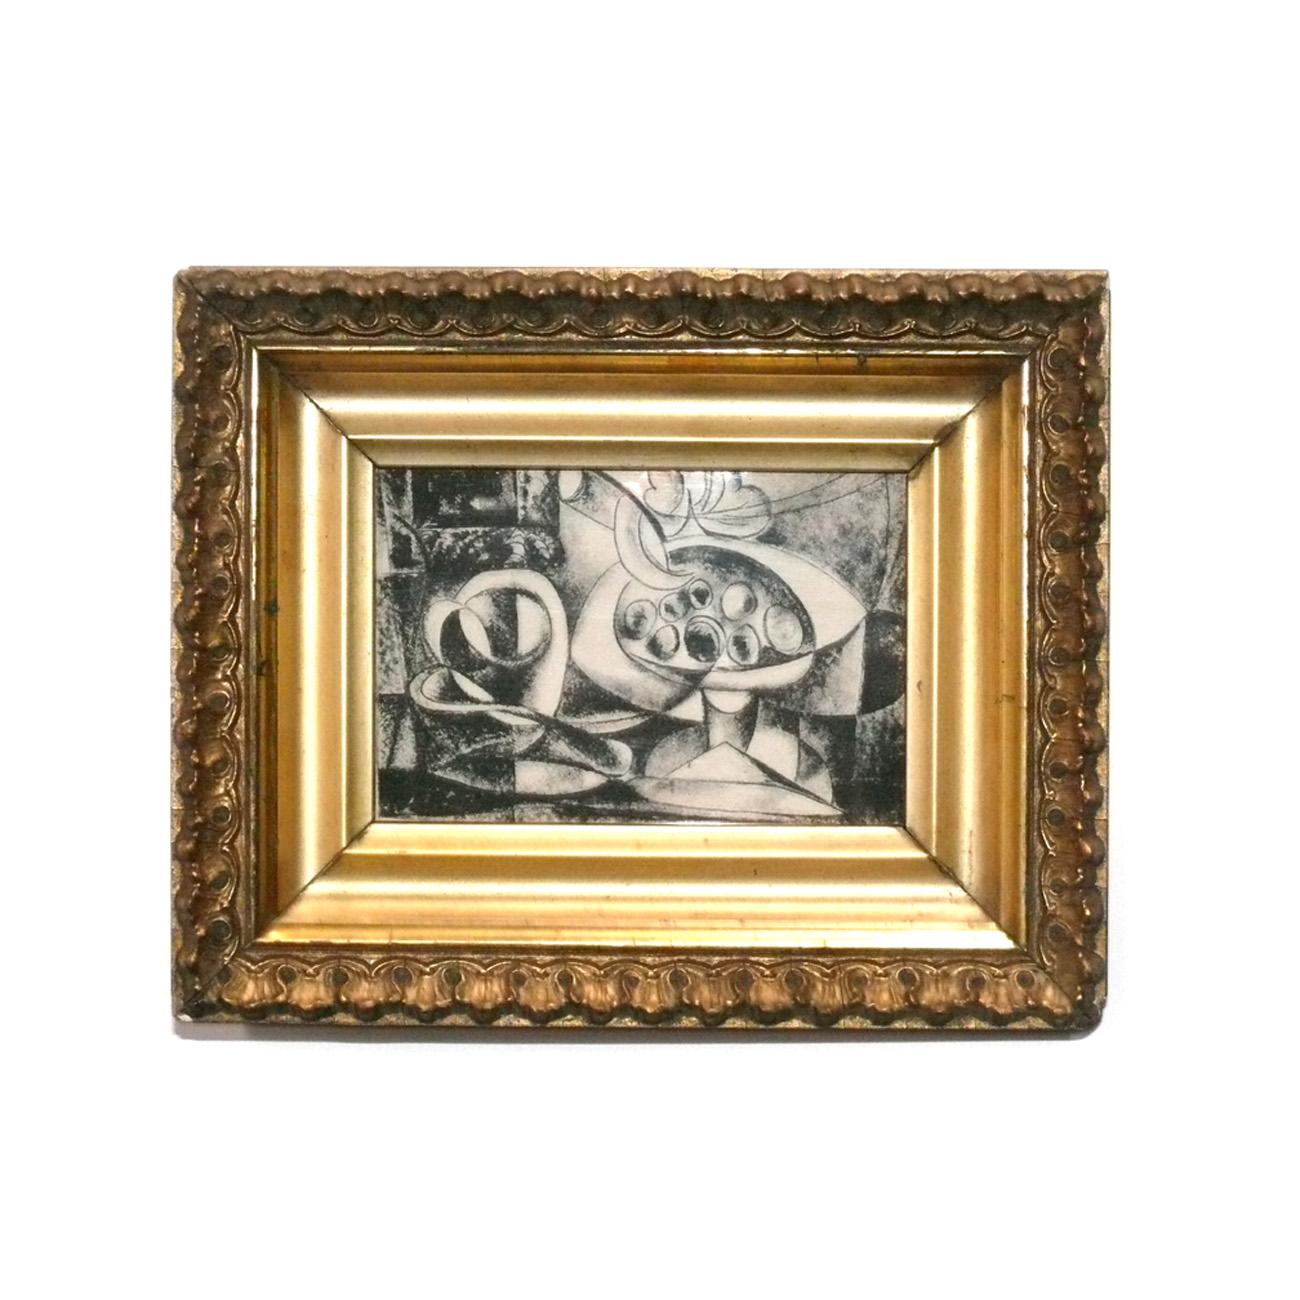 Auswahl von Schwarz-Weiß-Drucken von Pablo Picasso, Frankreich, ca. 1960er Jahre. Sie wurden kürzlich professionell in vergoldeten Vintage-Rahmen unter UV-beständigem Glas gerahmt. Der Preis liegt bei 350 Dollar pro Stück oder 1200 Dollar für alle